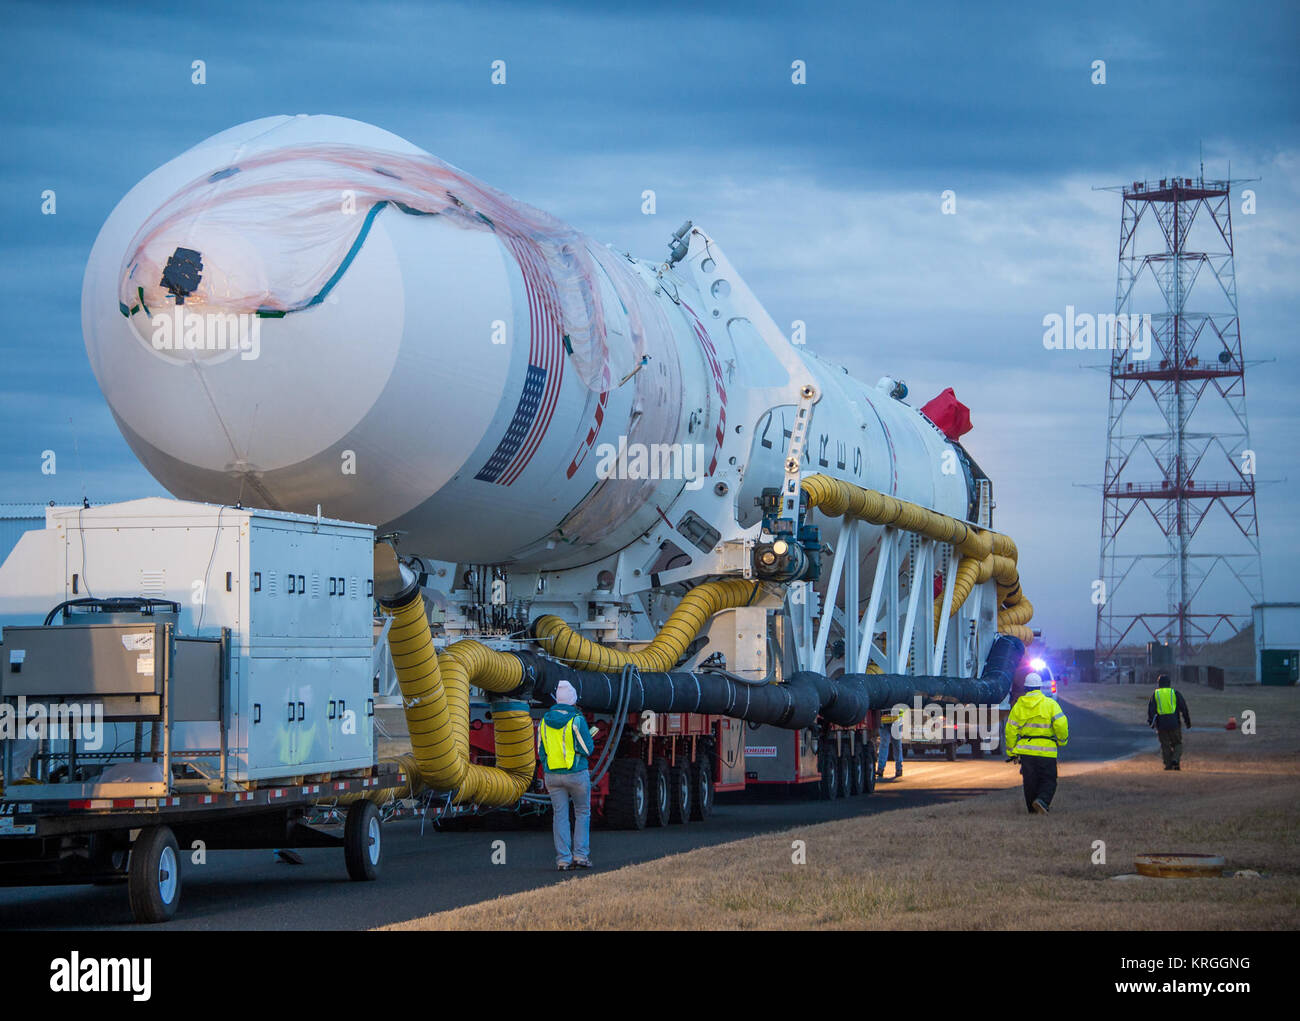 Un Orbital Sciences Corporation Antares rocket è visto su Launch Pad-0A in corrispondenza di NASA Wallops Flight Facility, lunedì 6 gennaio 2014 in anticipo di una prevista Mercoledì, Gennaio 8th, 1:32 p.m. Lancio di EST, Wallops Island, VA. L'Antares lancerà un Cygnus navicella spaziale su una nave da trasporto di rialimentazione missione alla stazione spaziale internazionale. L'orbitale-1 missione è Orbital Sciences" primo contratto consegna merci volo verso la stazione spaziale della NASA. Tra il carico a bordo di Cygnus impostato per avviare per la stazione spaziale sono esperimenti scientifici, equipaggio disposizioni, parti di ricambio e altro hardware. Più info: http://1. Foto Stock